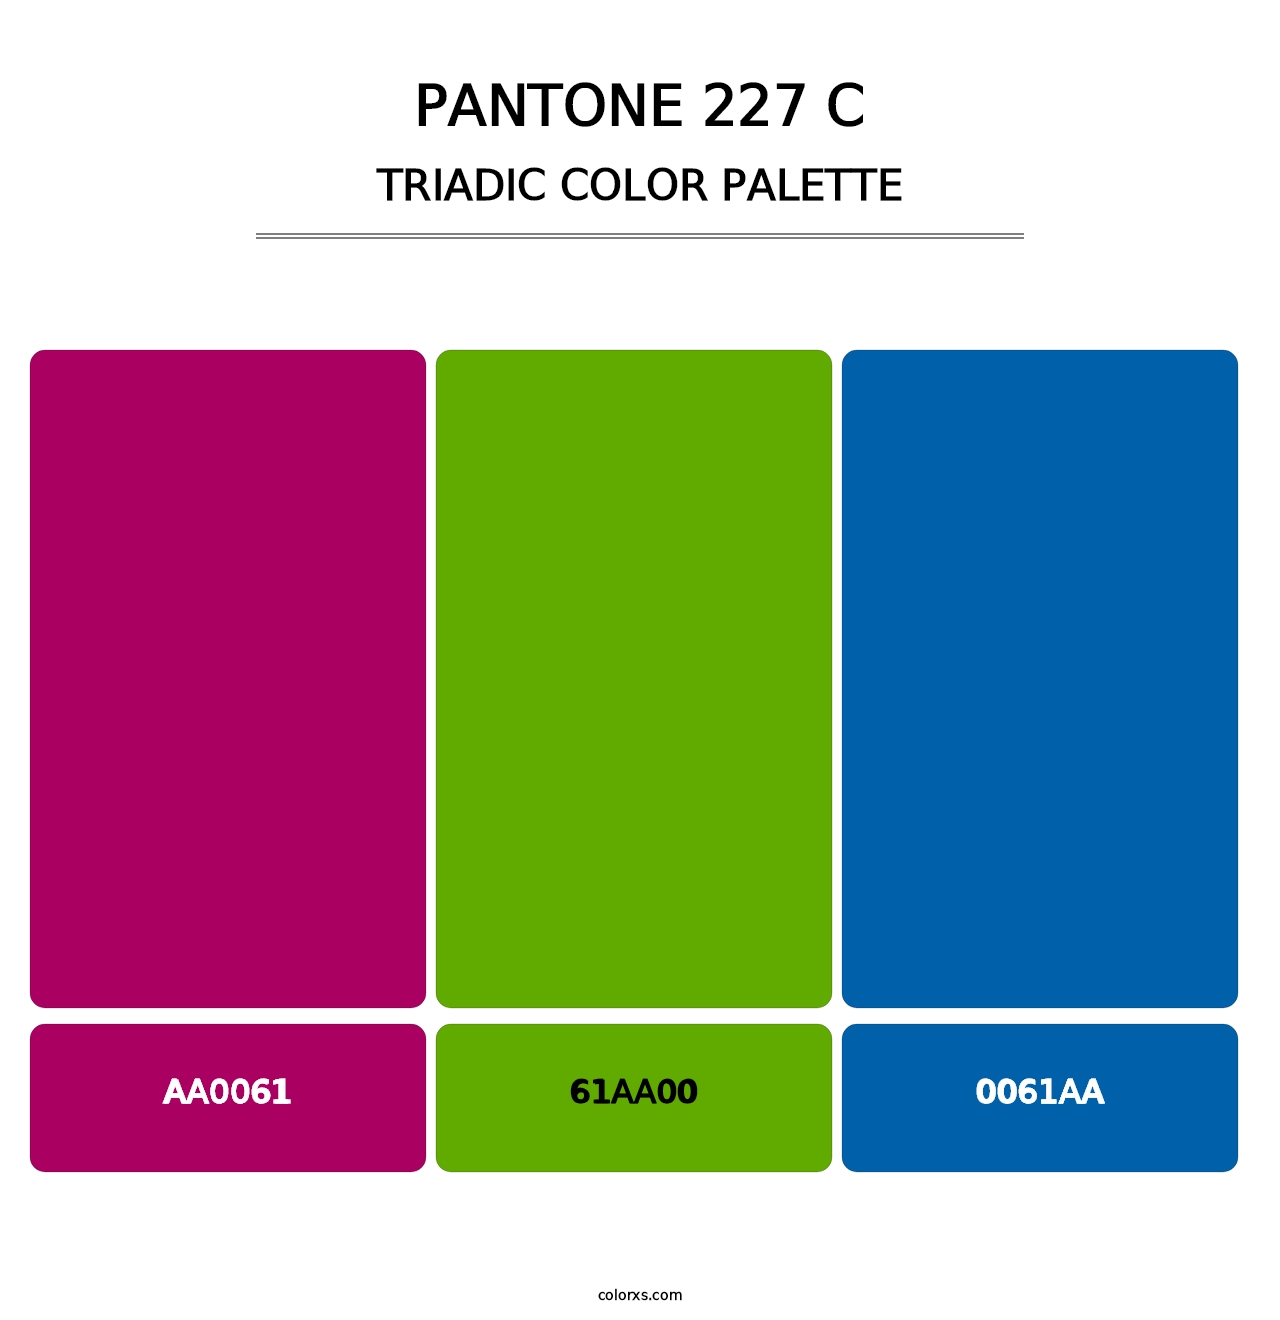 PANTONE 227 C - Triadic Color Palette